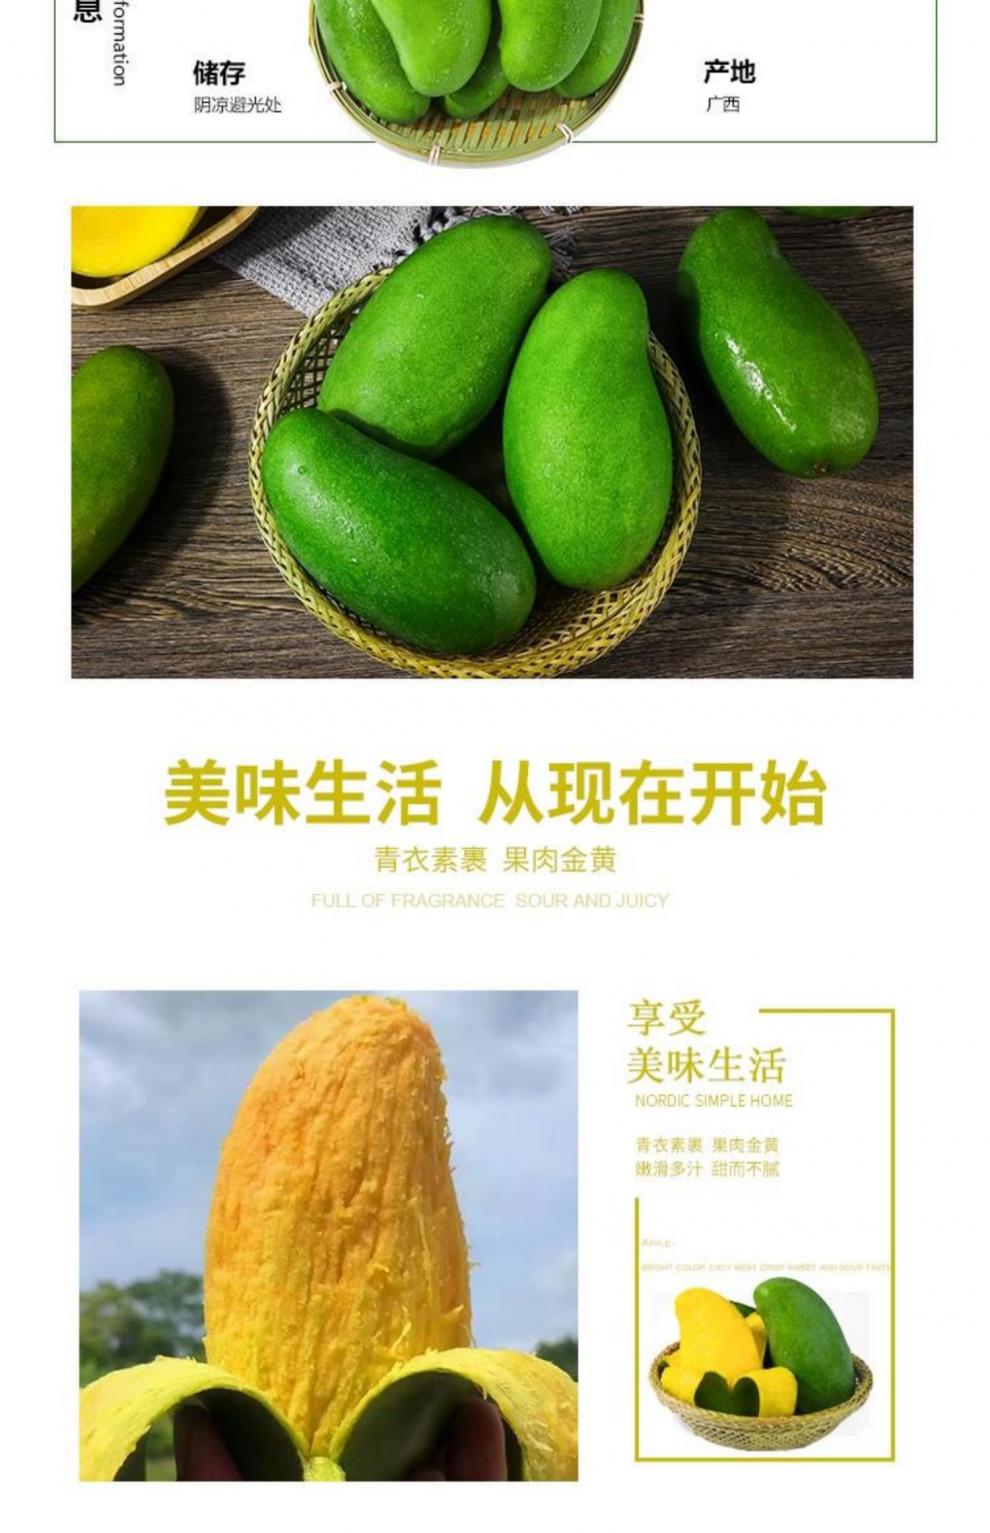 桂七芒果宣传广告图片